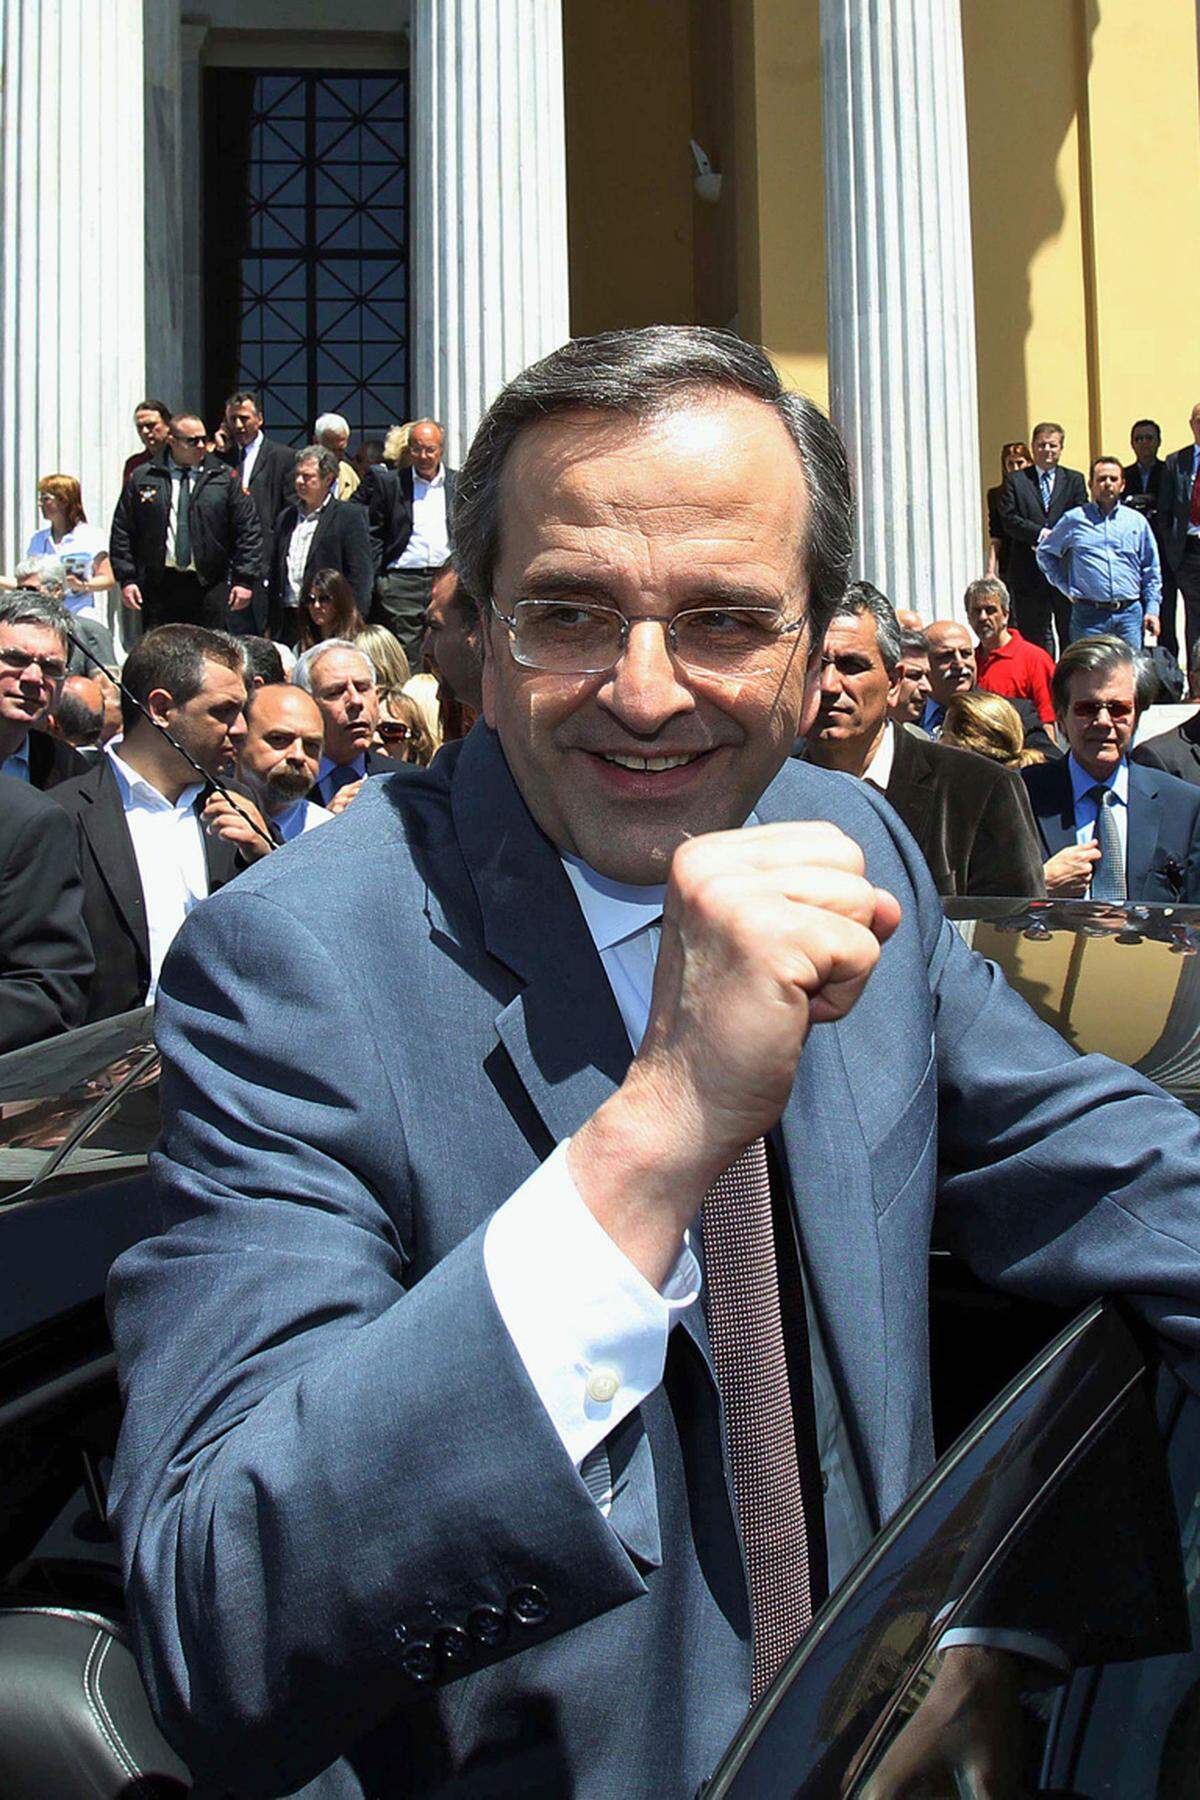 Die konservative Partei des Ökonomen Antonis Samaras landete bei der Wahl mit 129 Mandaten auf Platz eins. Die Partei spricht sich vehement für den Verbleib in der Eurozone und die Weiterführung des Sparkurses aus. Angesichts der EU-Unterstützung für spanische Banken hat sie sich kurz vor der Wahl aber für "Nachverhandlungen" über einzelne Punkte des Hilfspakets für Griechenland ausgesprochen.